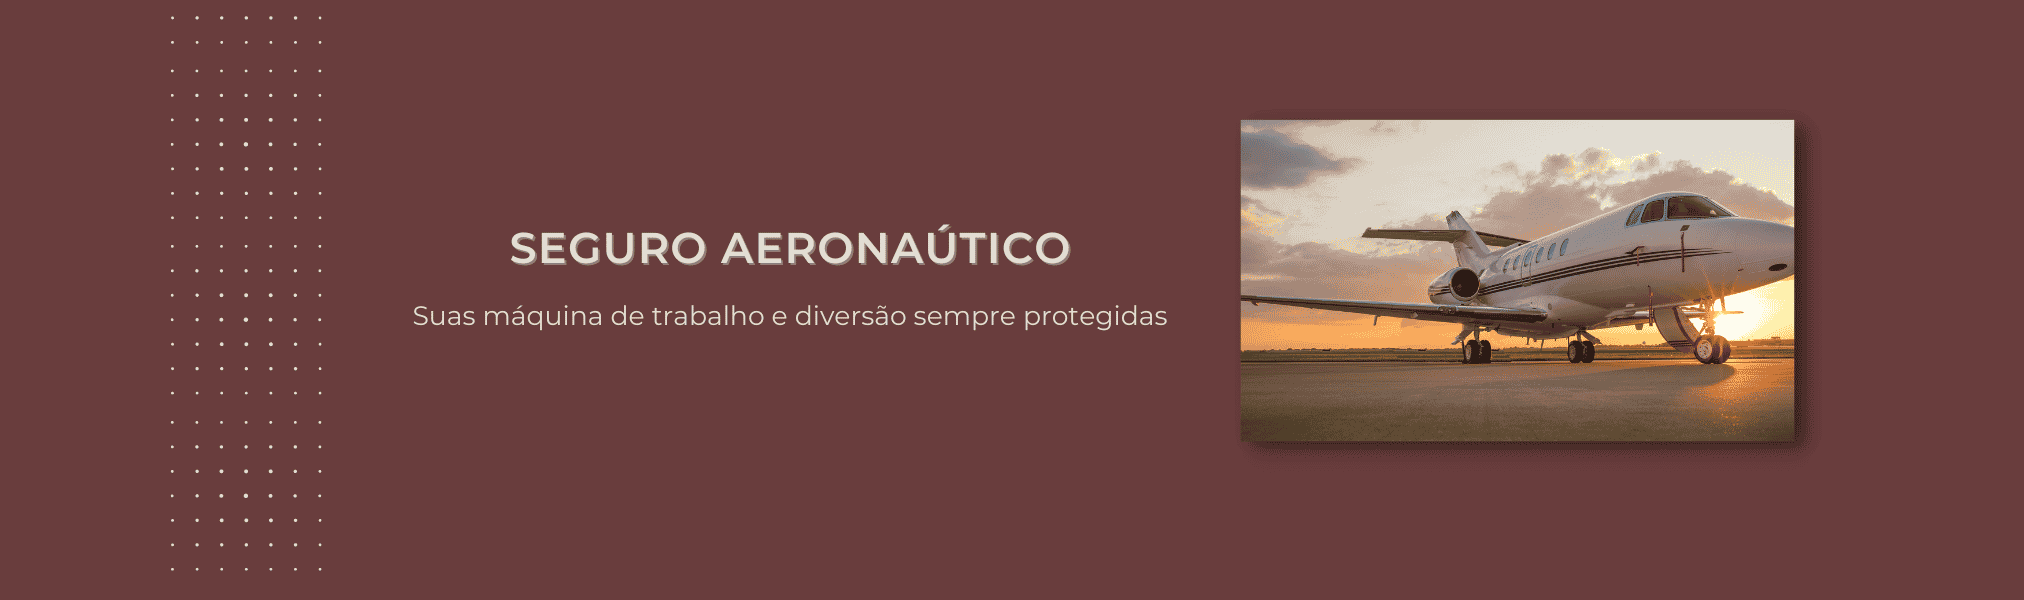 Banner Seguro Aeronautico